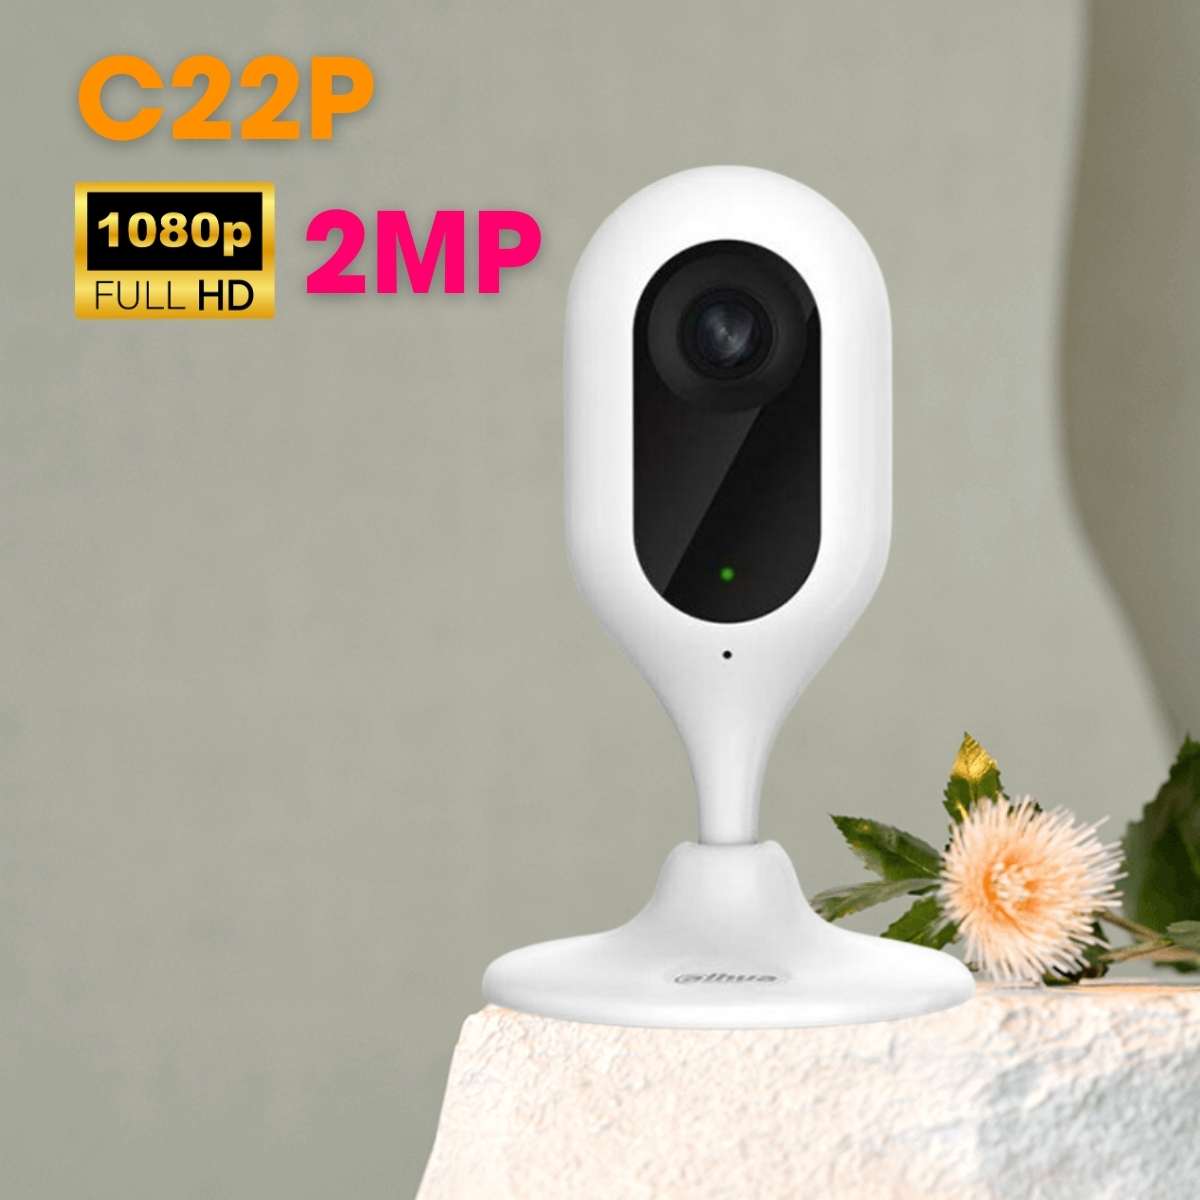 Camera Mini không dây IMOU IPC-C22P 2.0 Megapixel, Micro SD, âm thanh 2 chiều